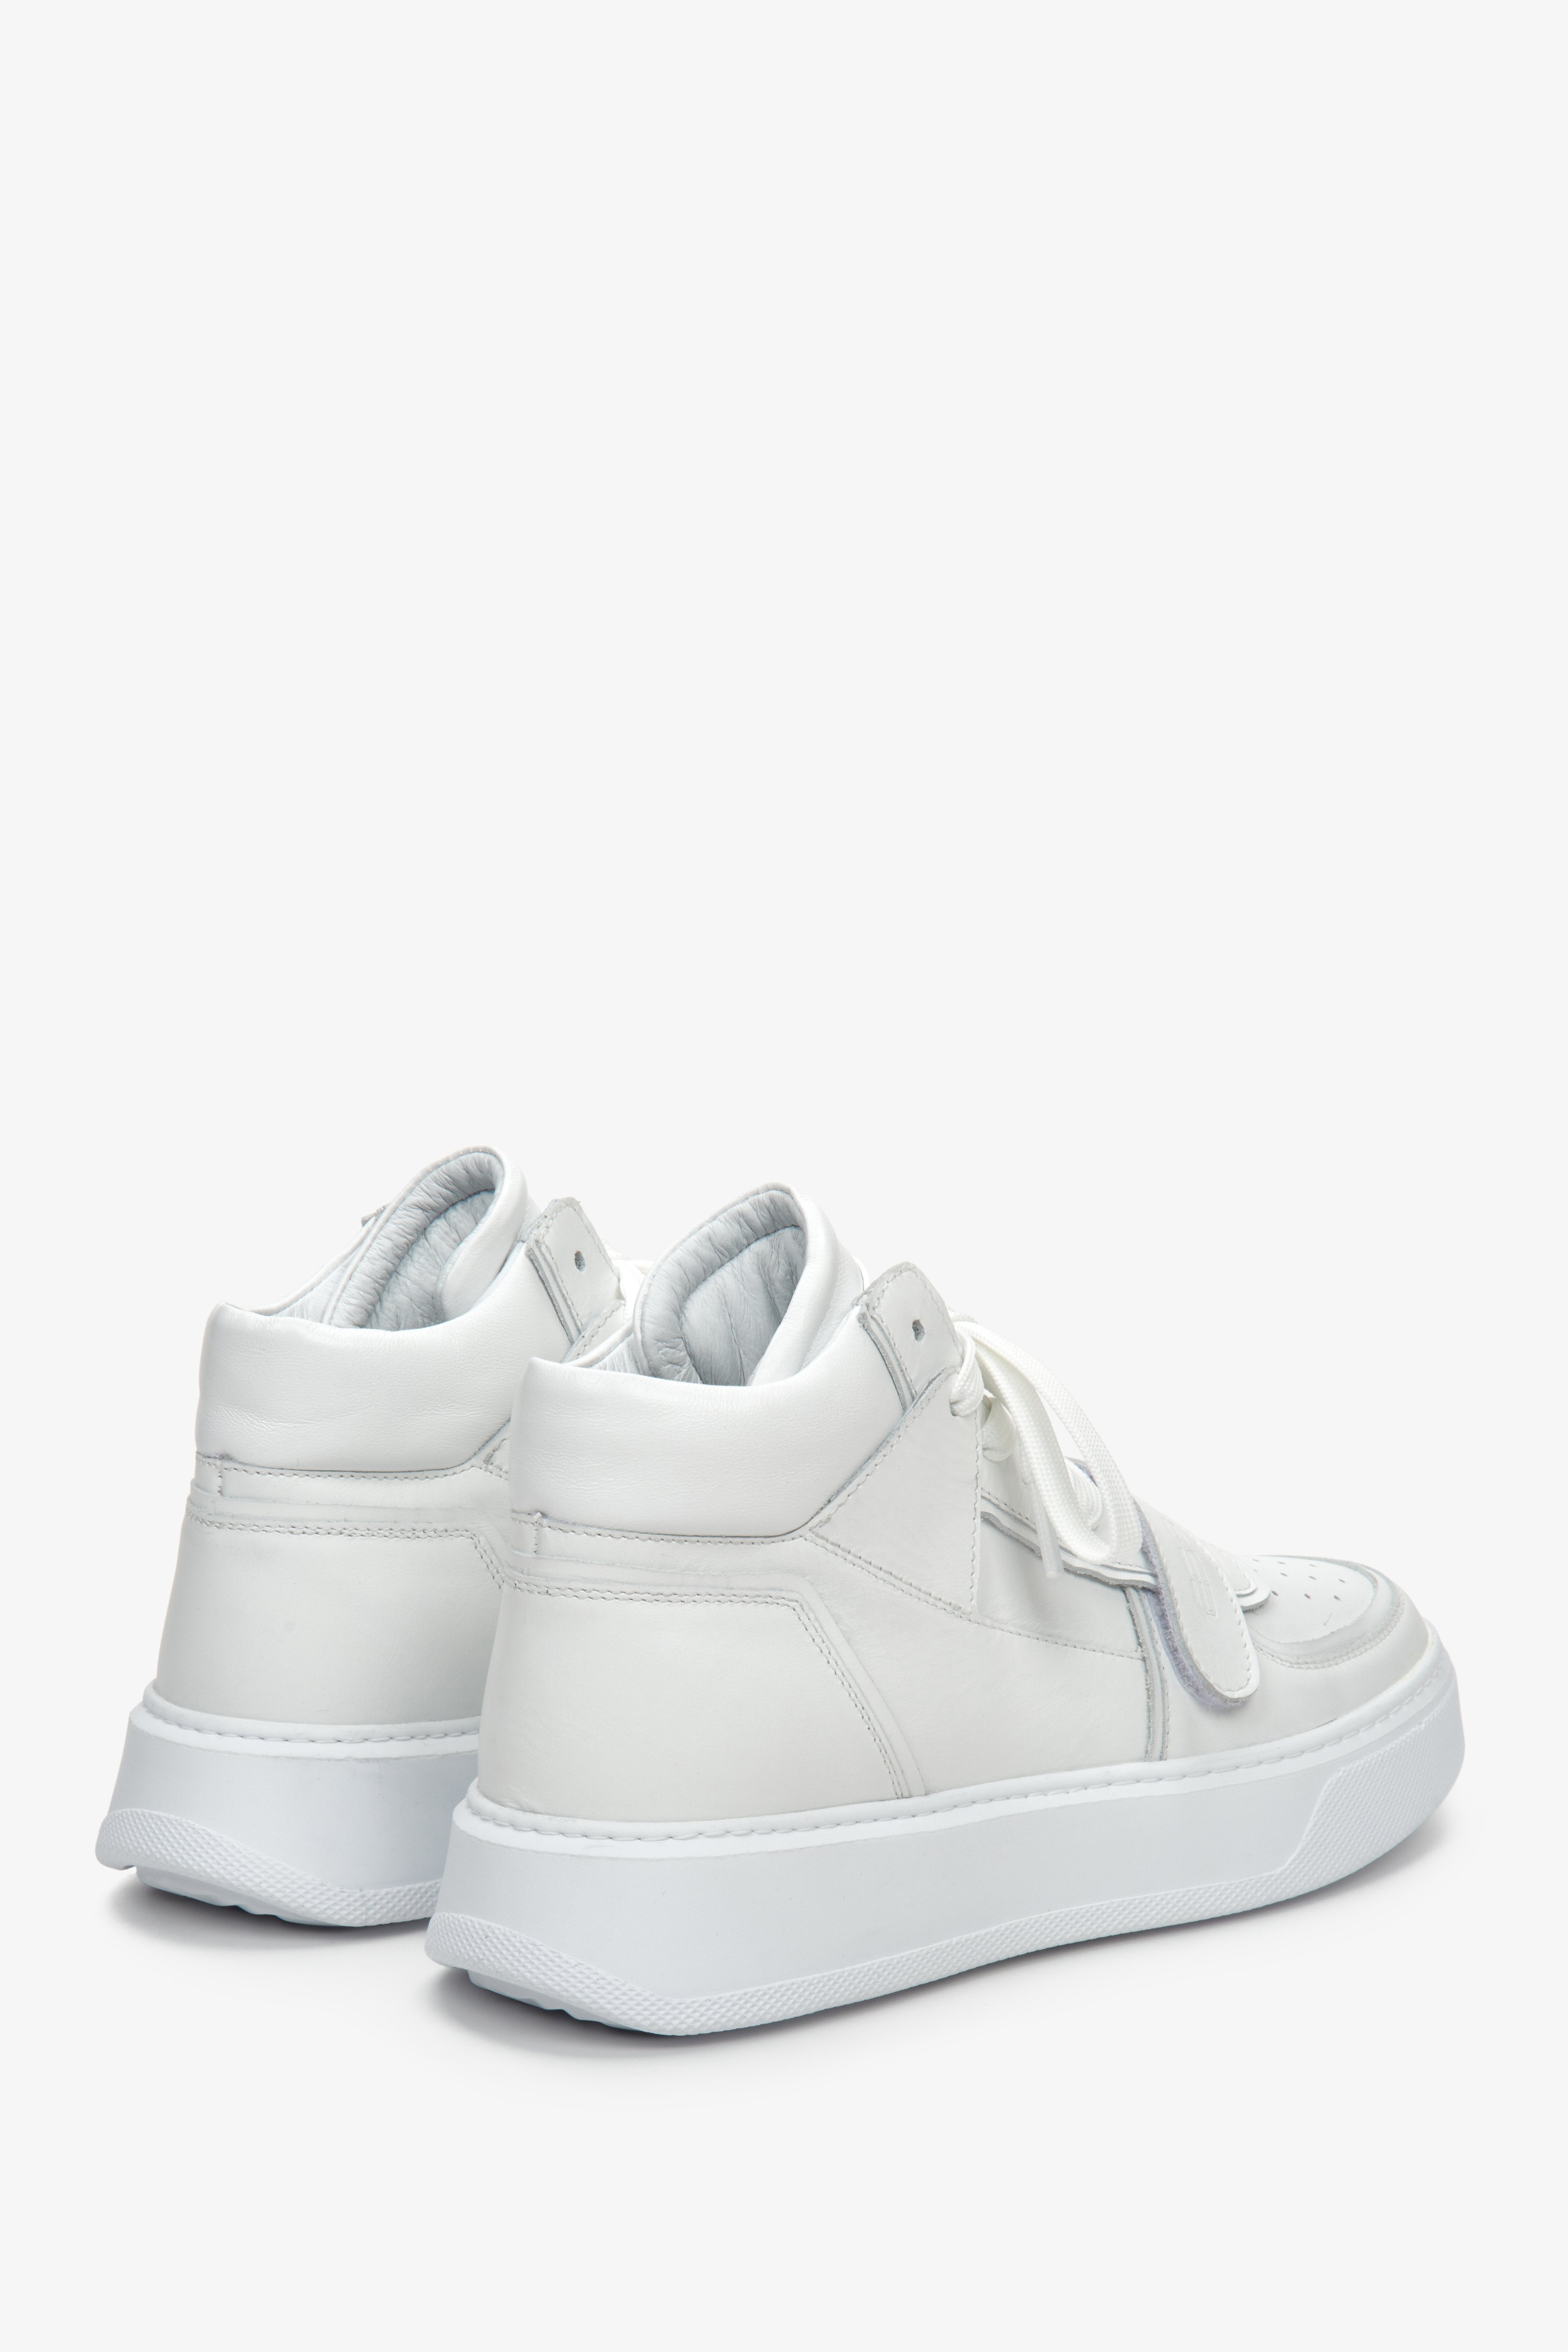 Sportowe, wysokie sneakersy damskie w kolorze białym ze skóry naturalnej ES 8 - zbliżenie na zapiętek i tył buta.